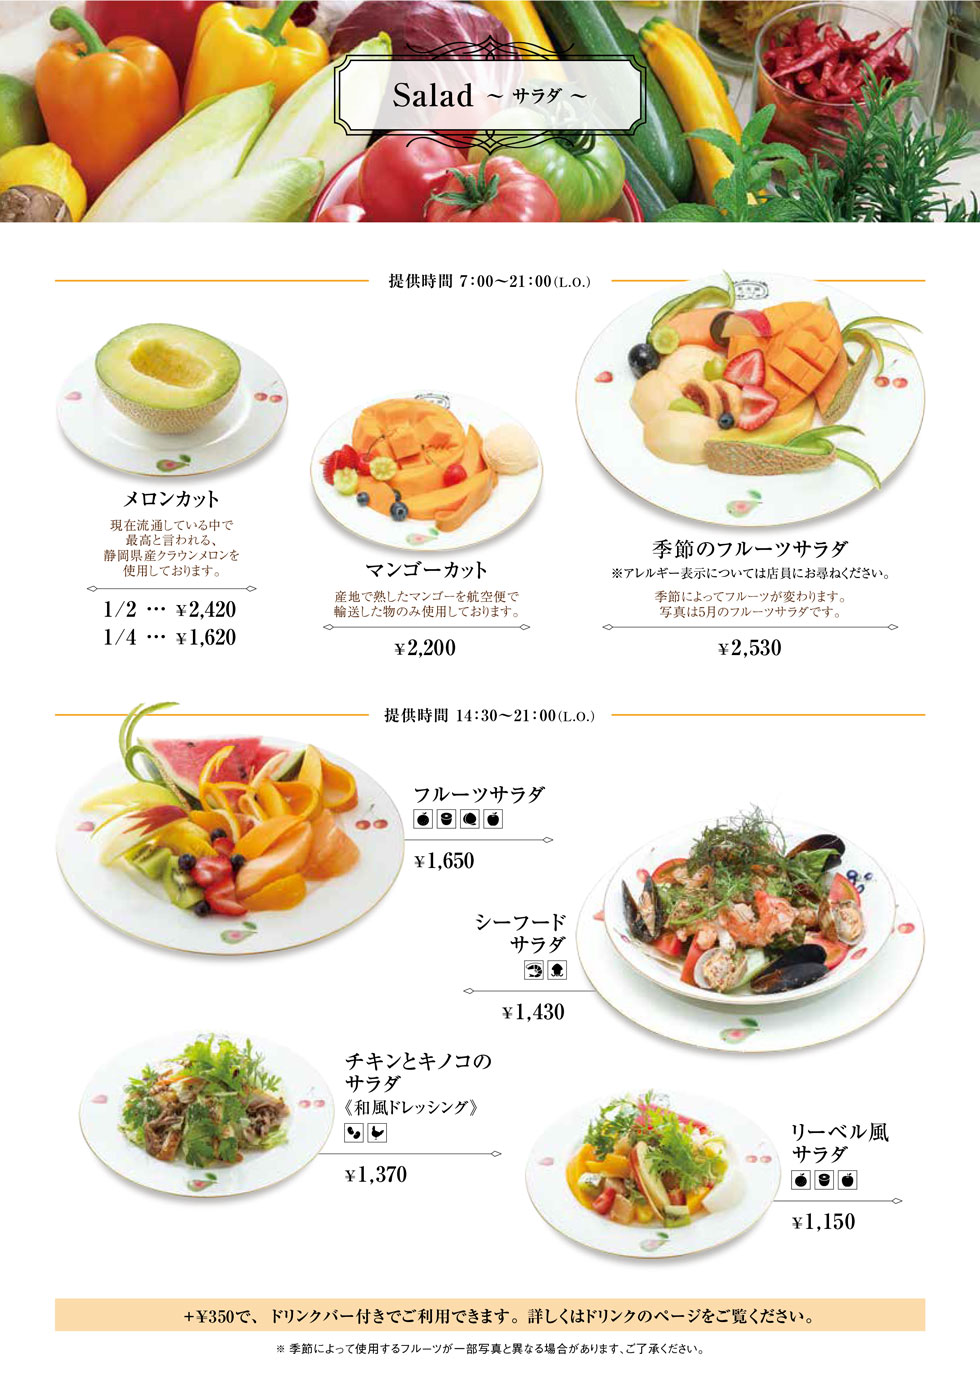 藤沢店の食事メニュー定番サラダ